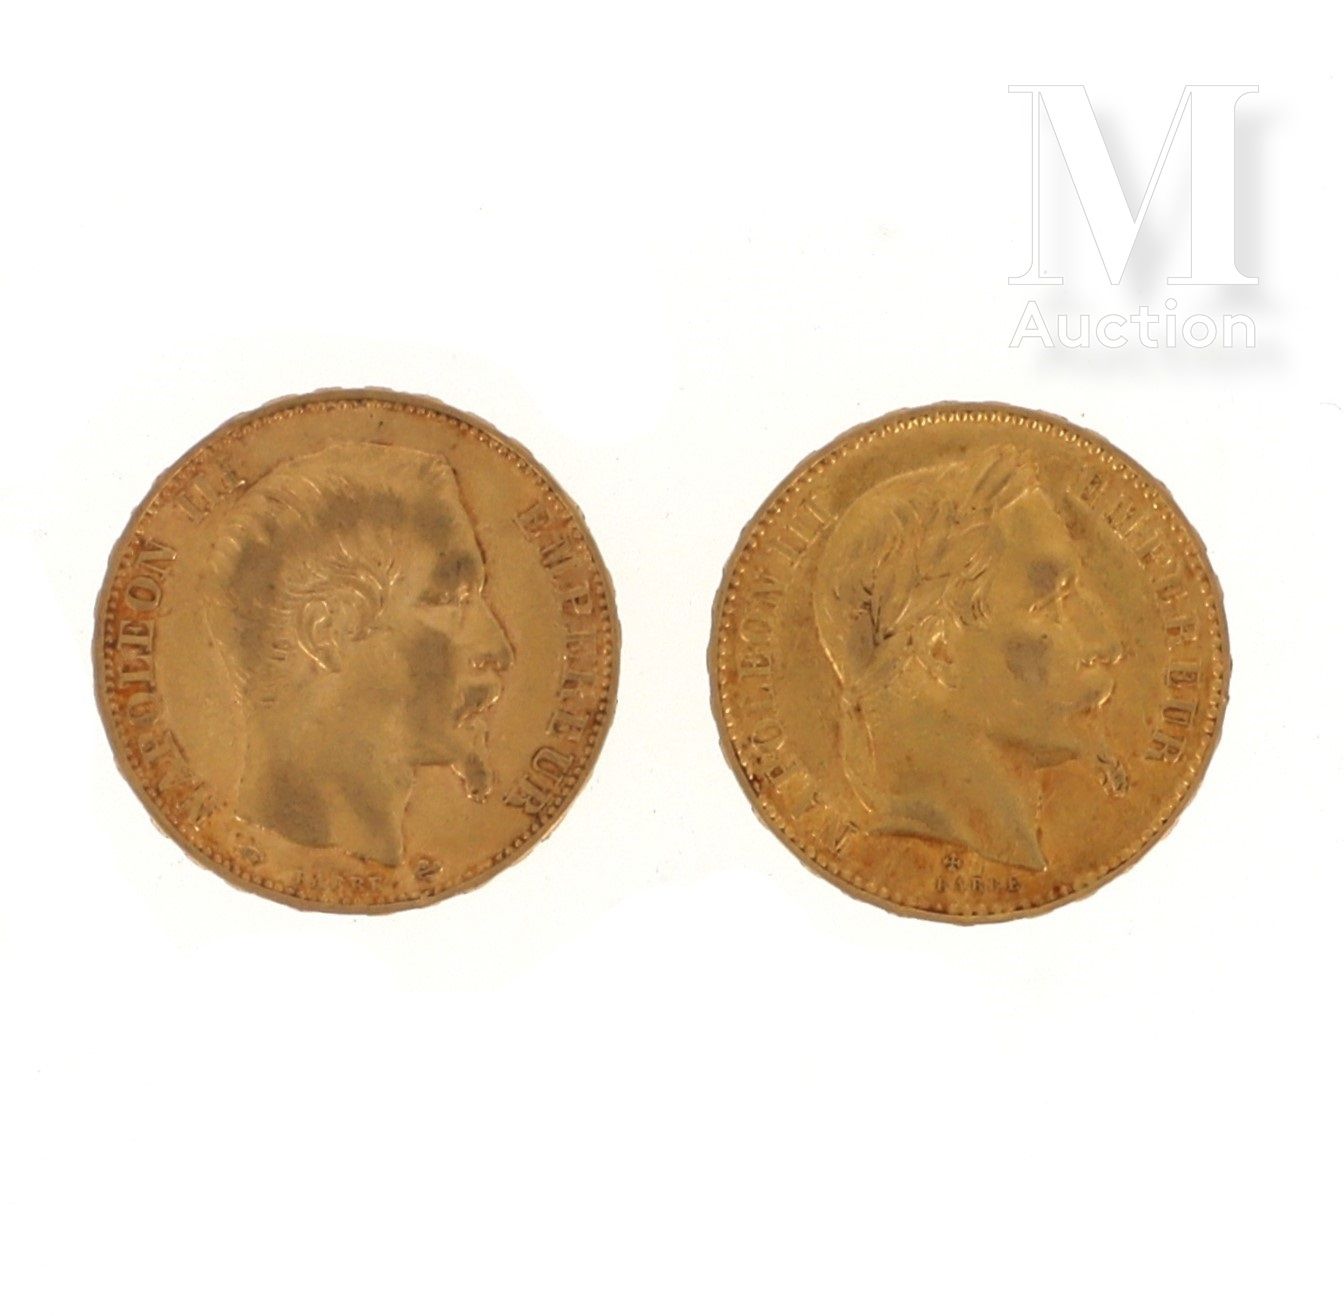 Deux pièces 20 FF or Deux pièces en or de 20 FF Napoléon :

- 1 x 20 FF Napoléon&hellip;